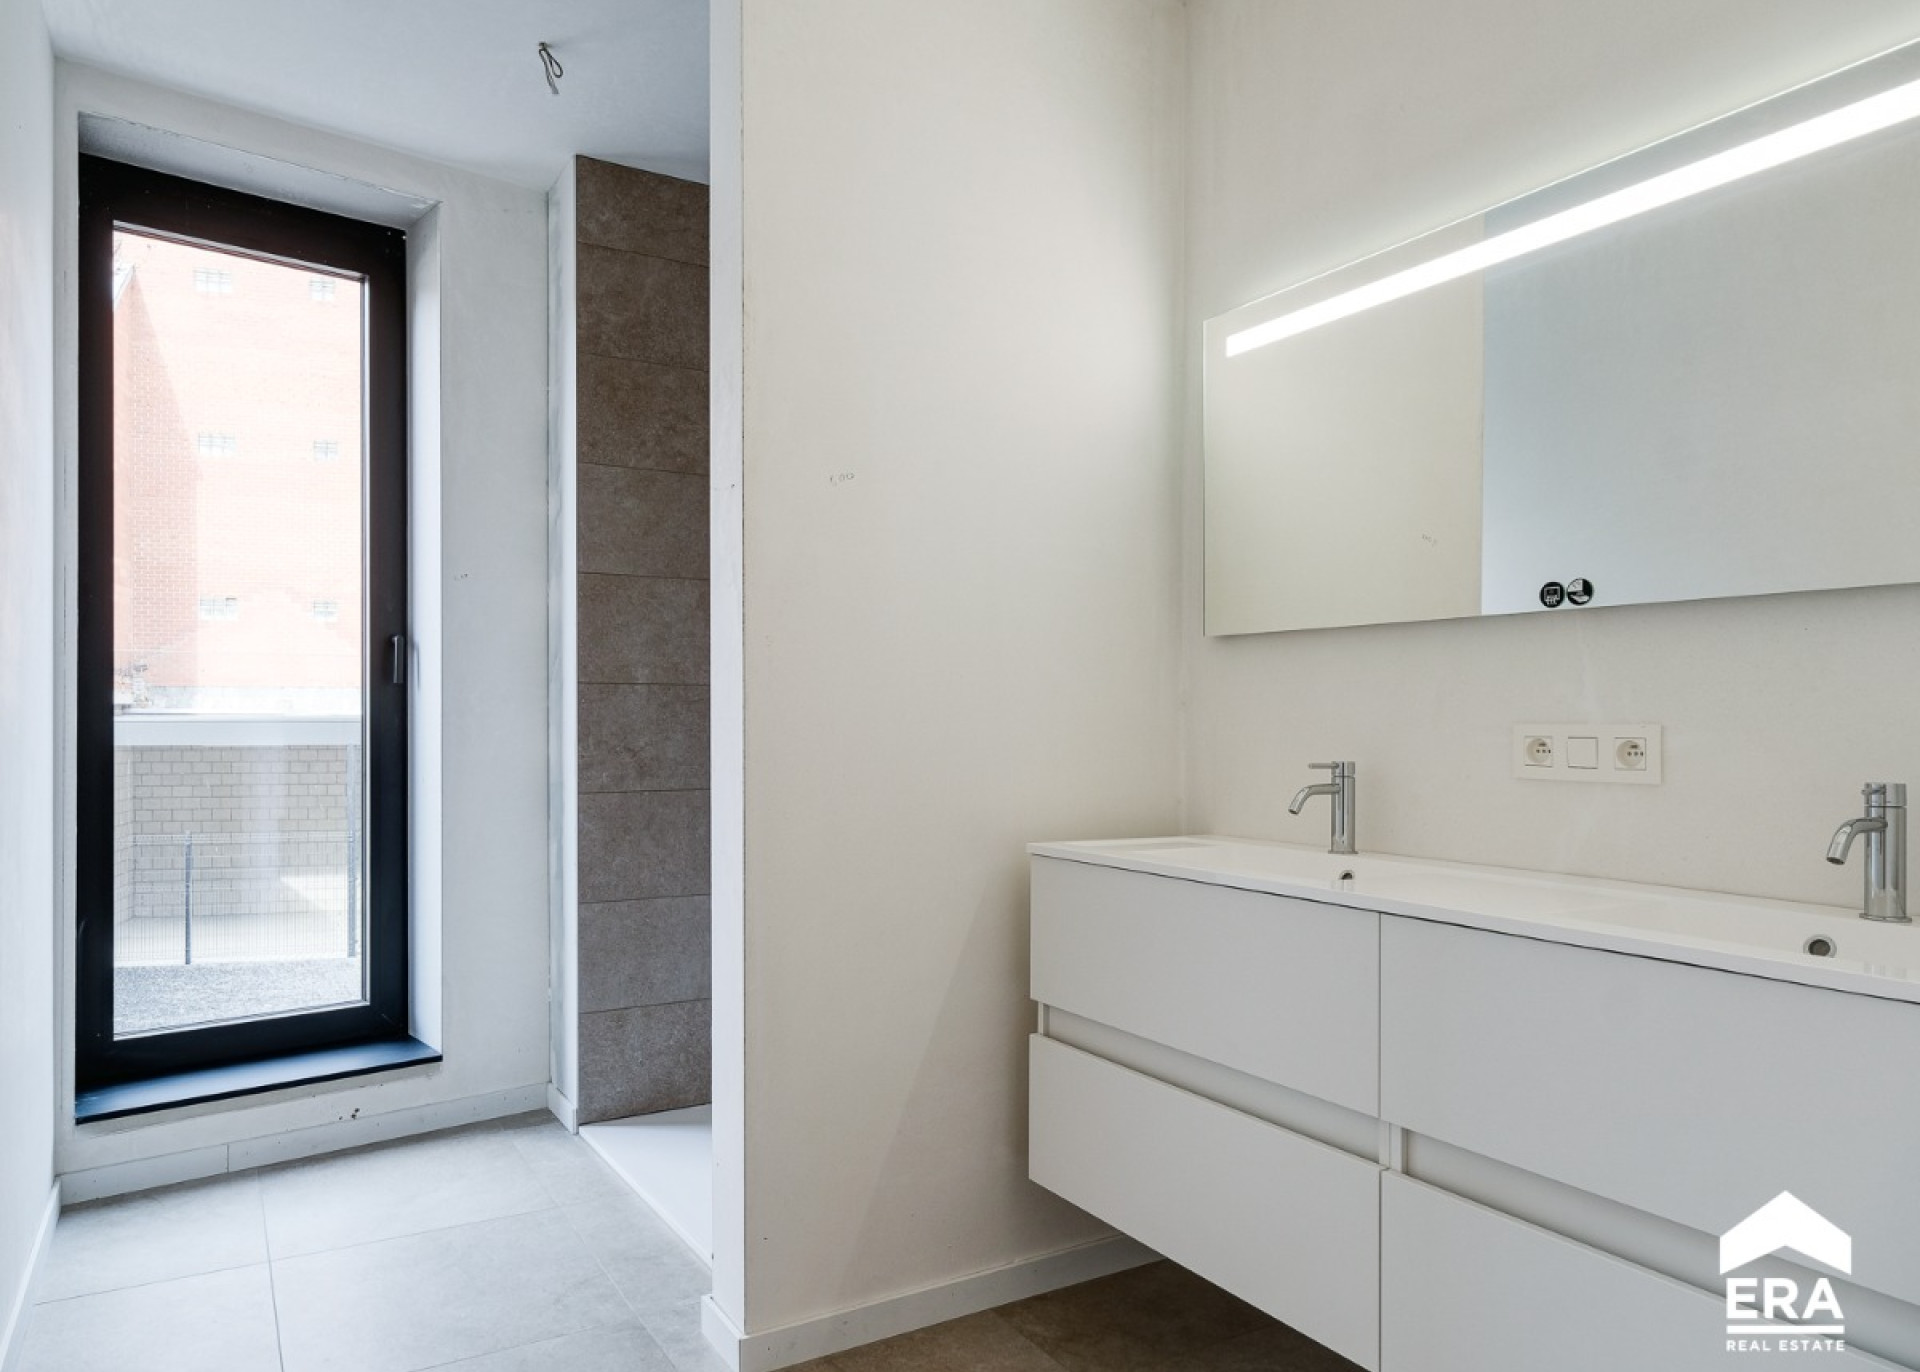 Appartement verkopen - ERA Nobis - Herk-de-Stad - Immo(18).jpg